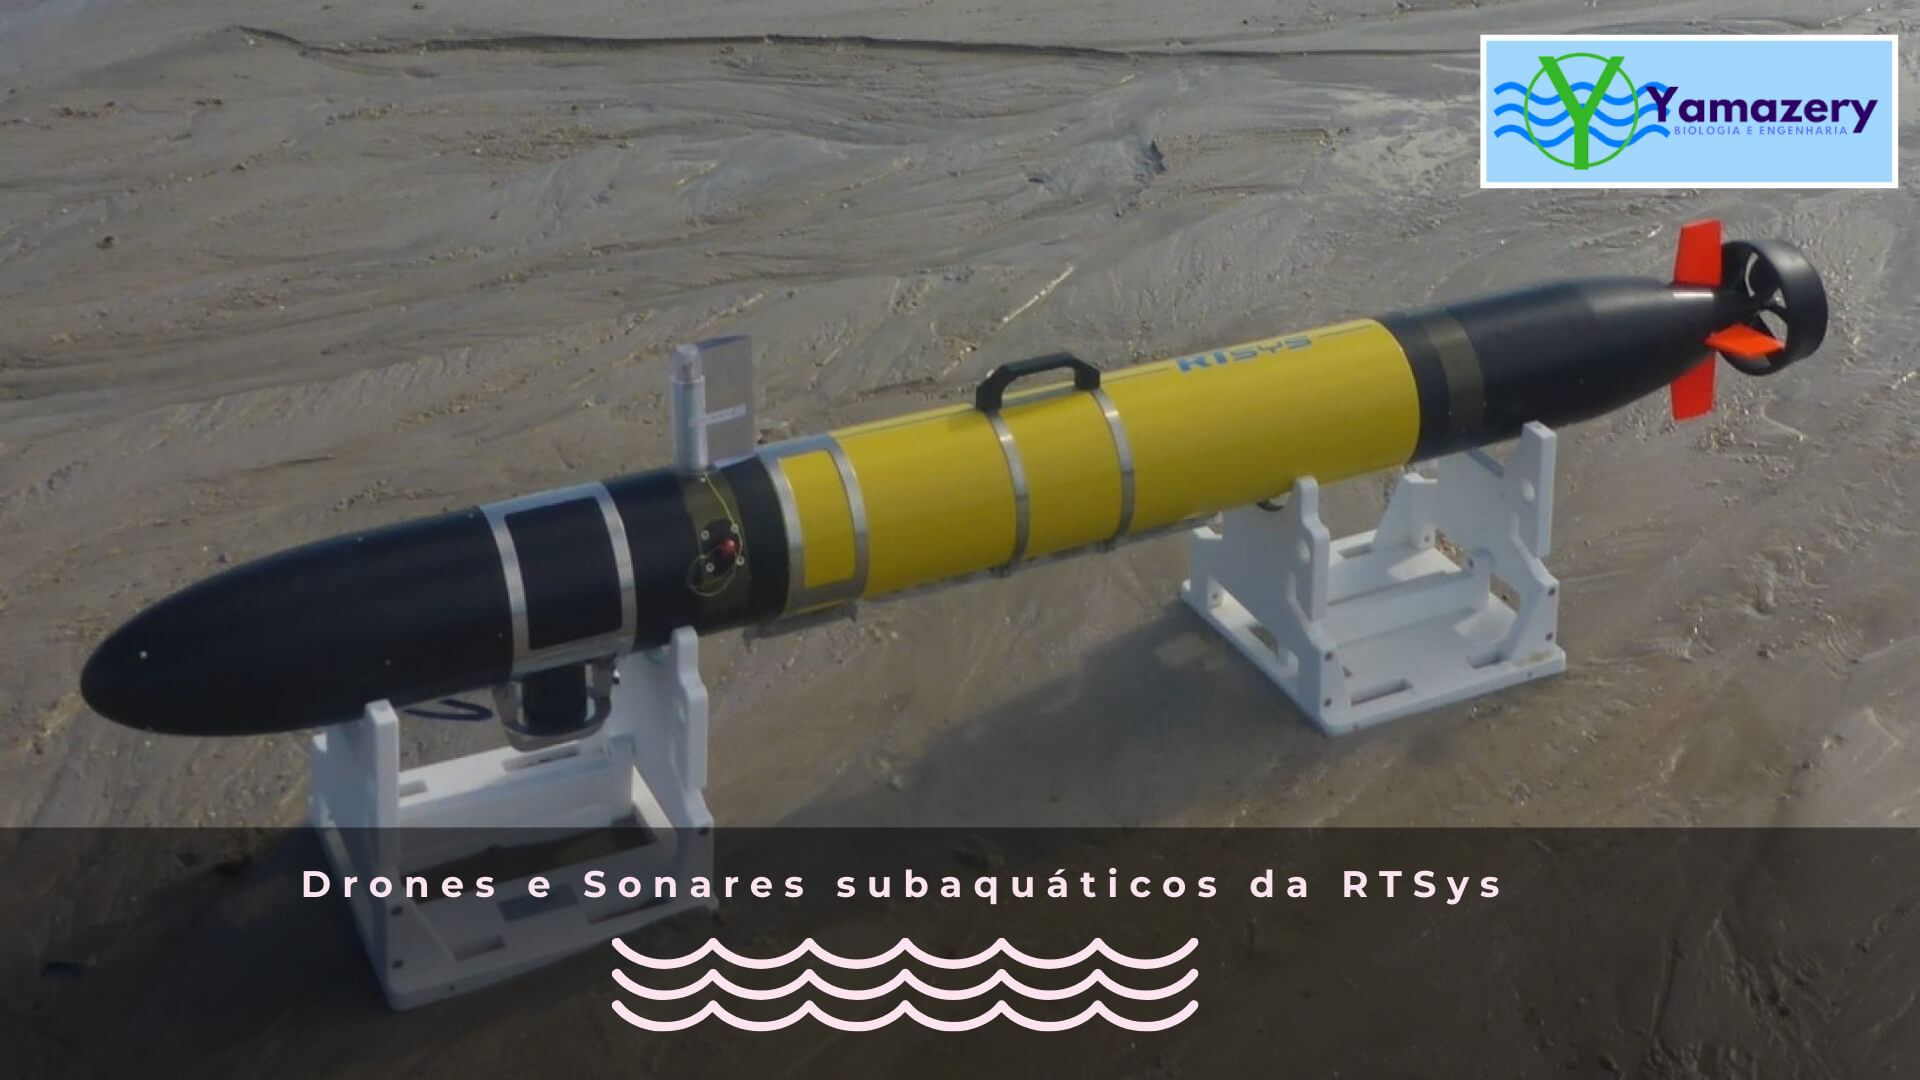 Drones e sonares subaquáticos da RTSys somos agentes deles com exclusividade no Brasil